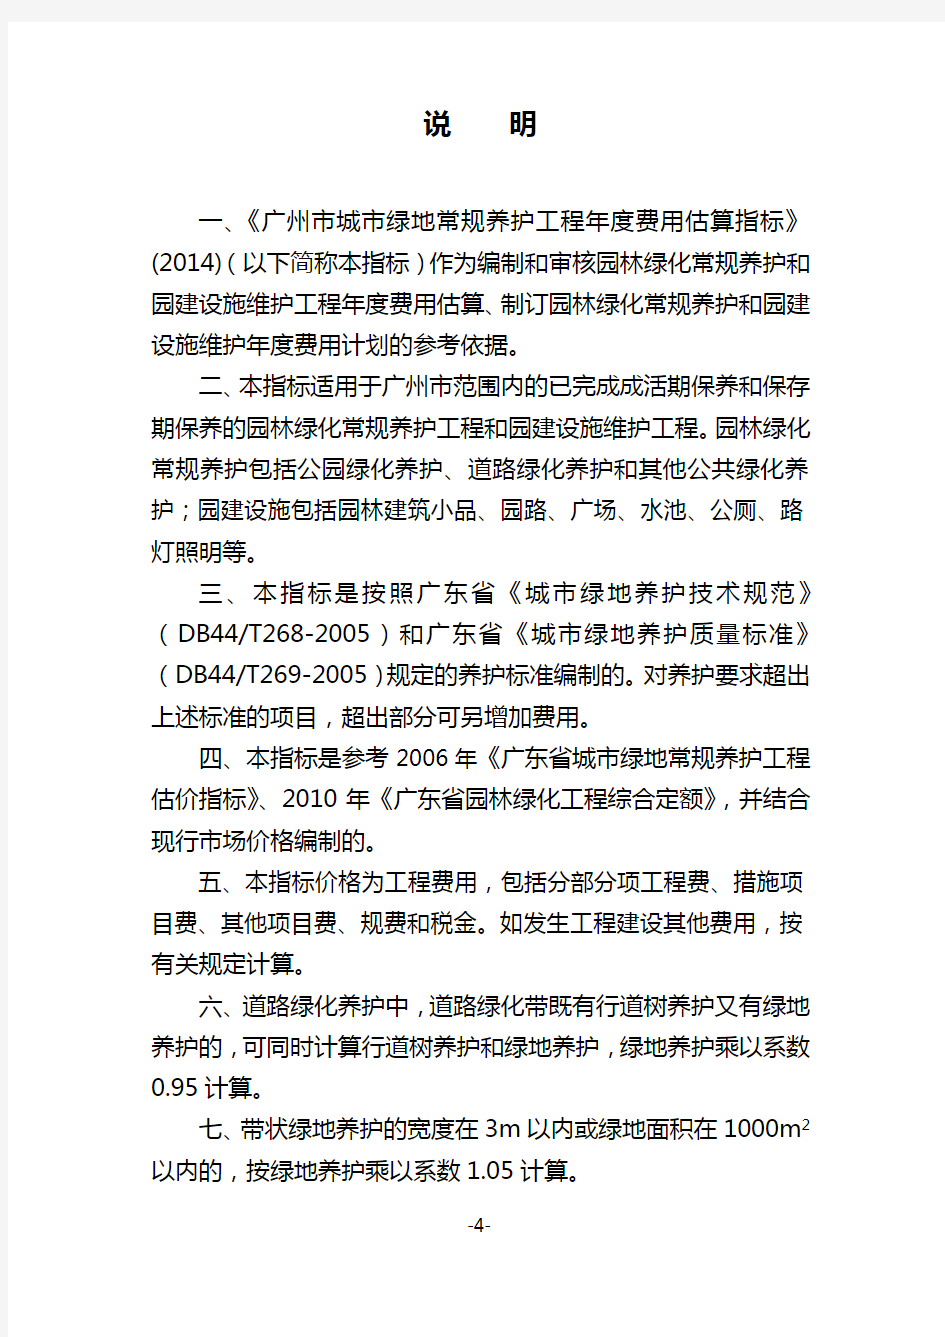 广州市城市绿地常规养护工程年度费用估算指标说明2014